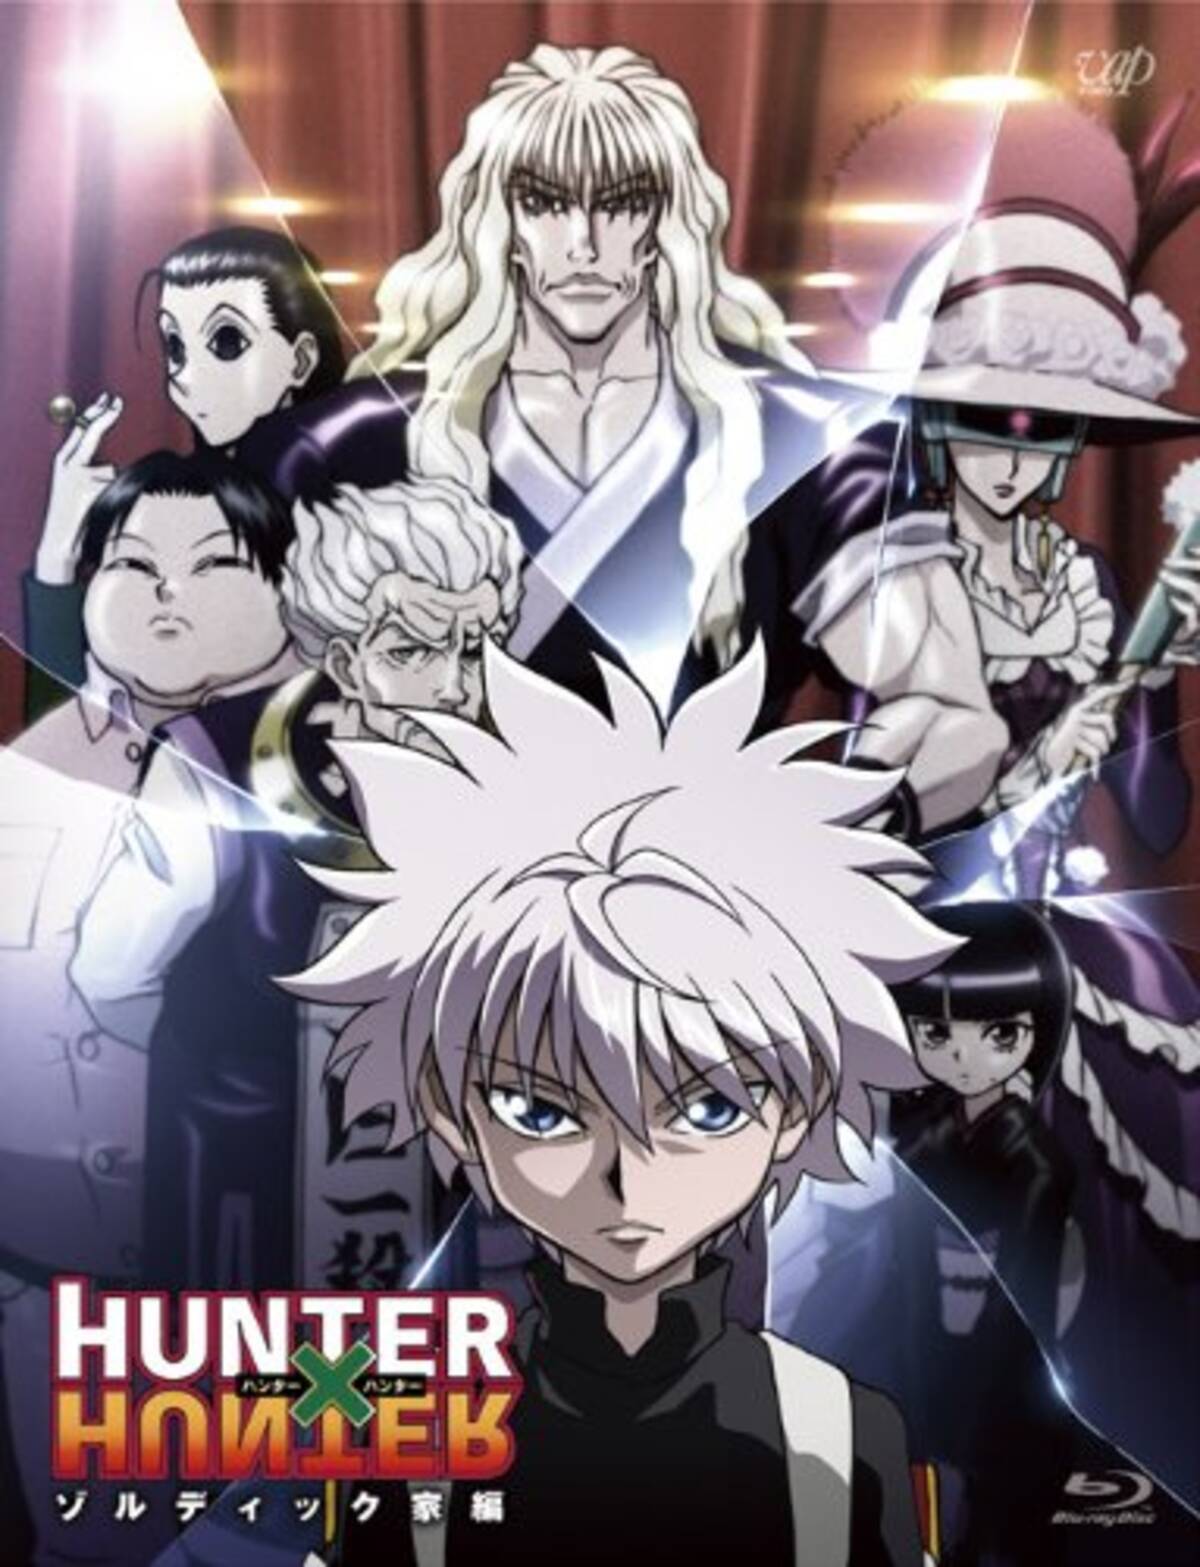 アニメキャラの魅力 暗殺一家ゾルディック家の三男坊 キルア ゾルディック とは Hunter Hunter 14年11月27日 エキサイトニュース 2 3